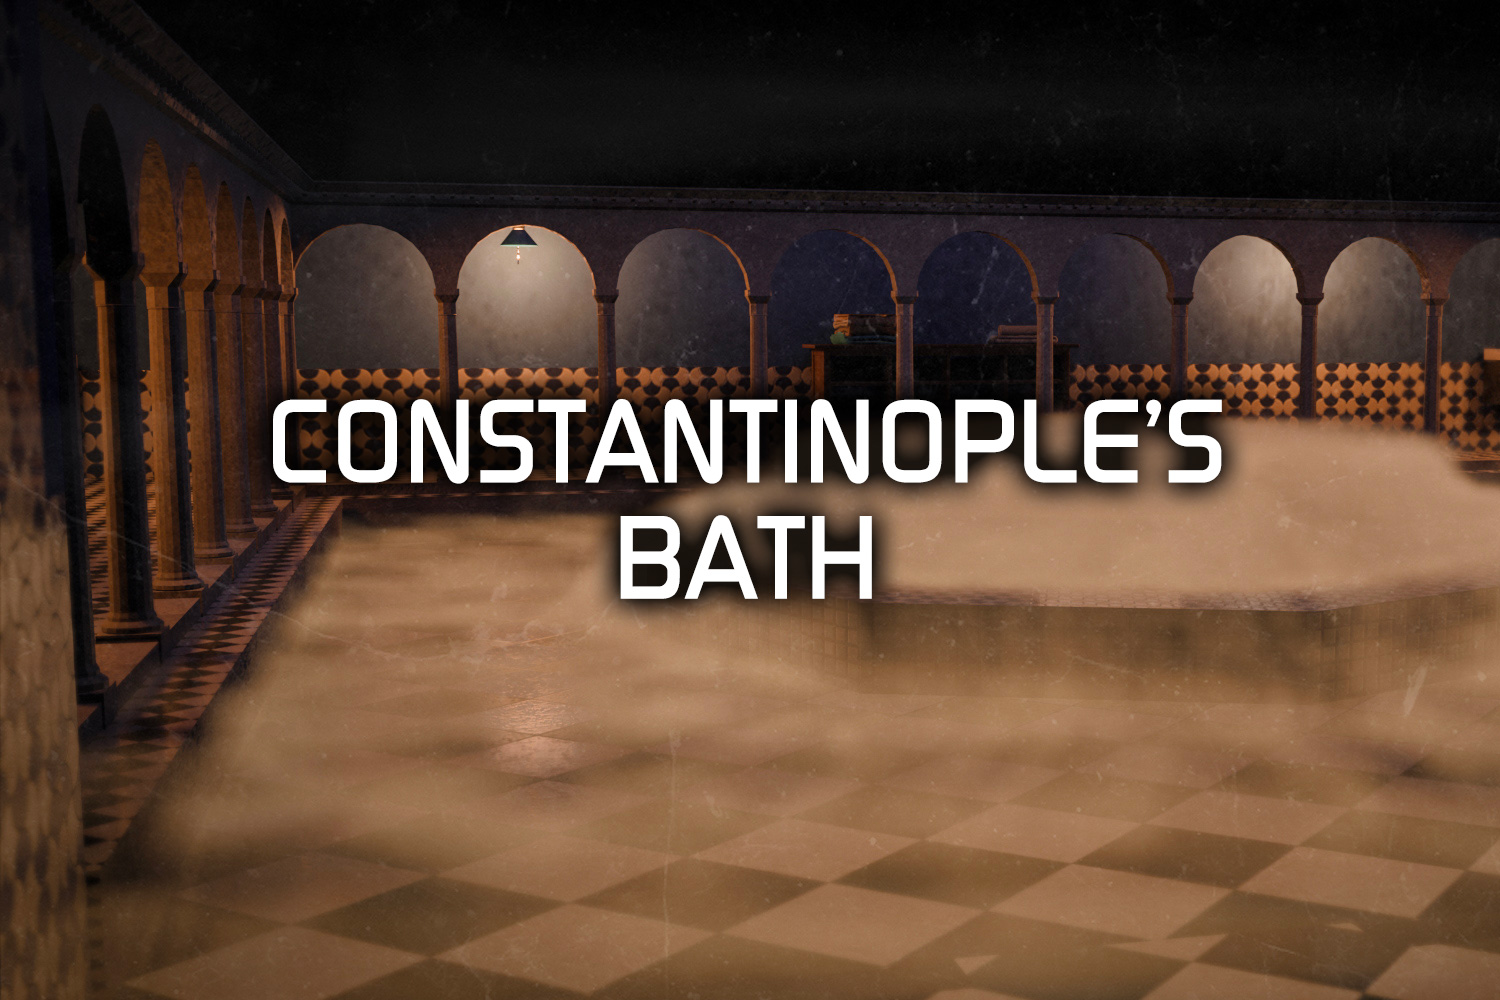 CONSTANTINOPLE’S BATH